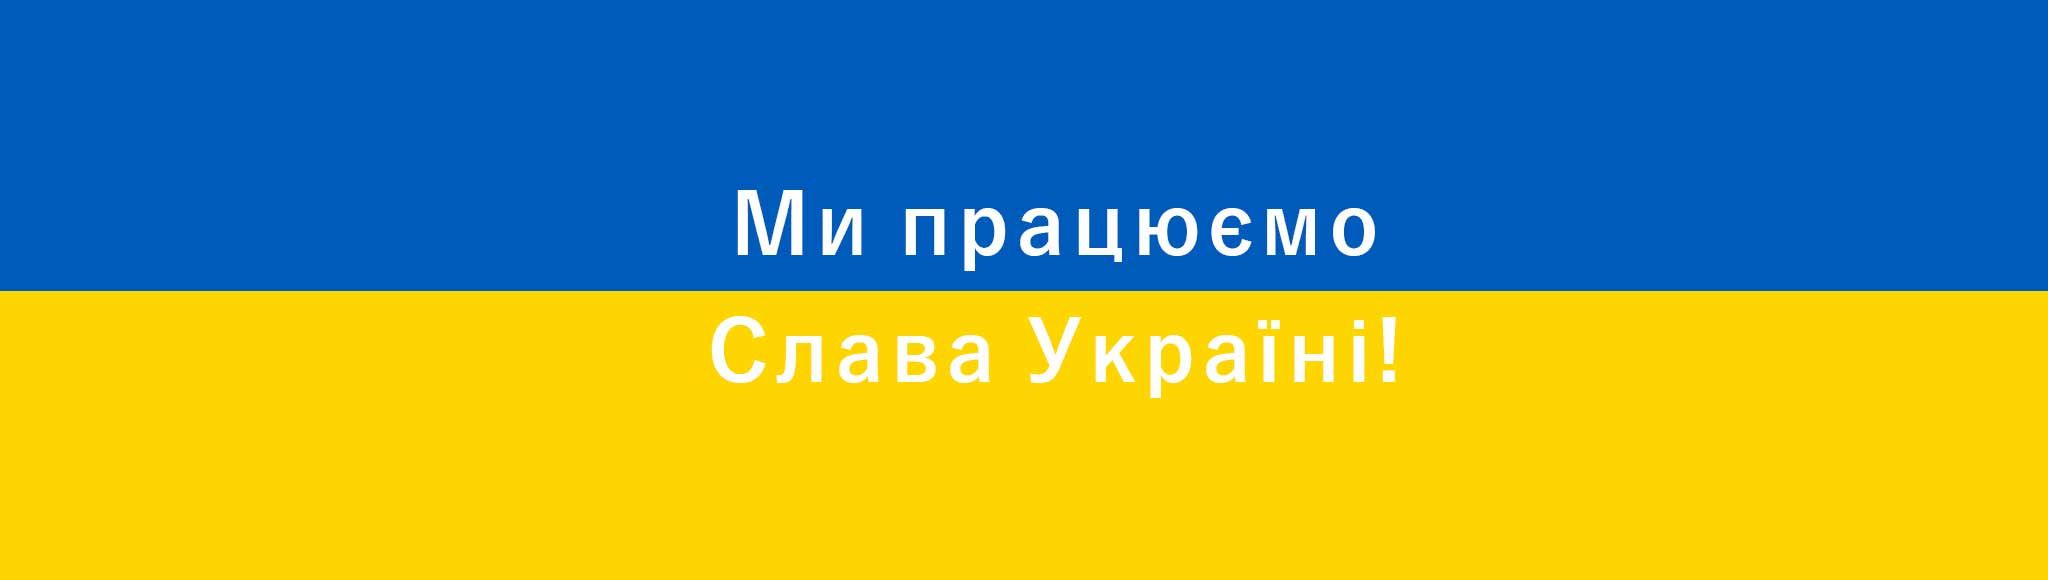 Ми працюємо - Слава Україні!